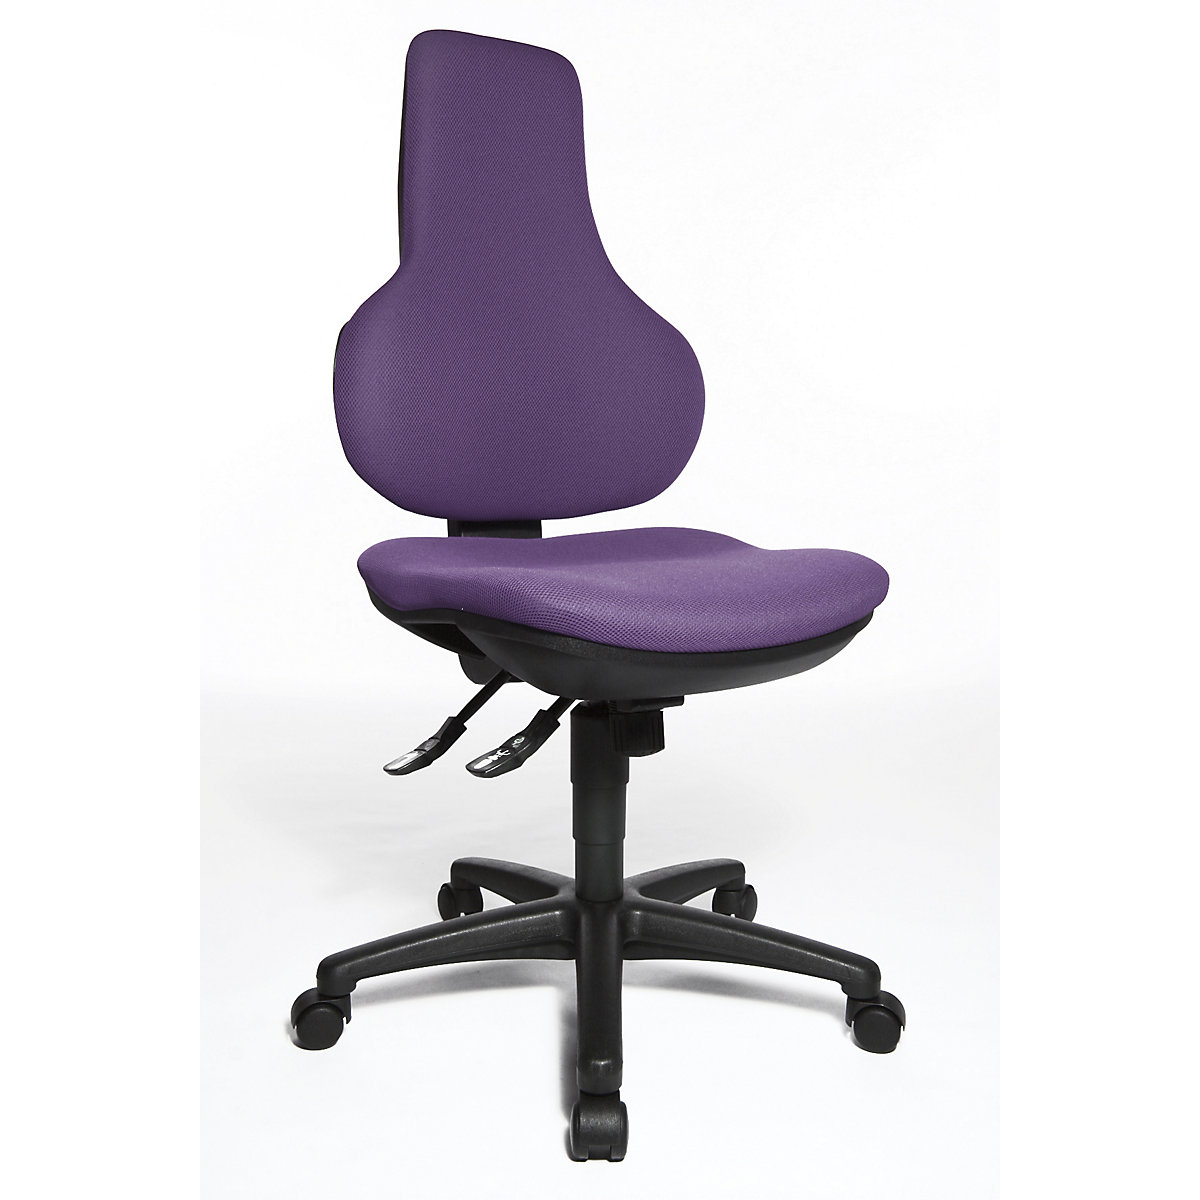 Okretna uredska stolica ERGO POINT SY – Topstar, s ergonomskim naslonom za leđa s mogućnošću namještanja visine, u ljubičastoj boji-6